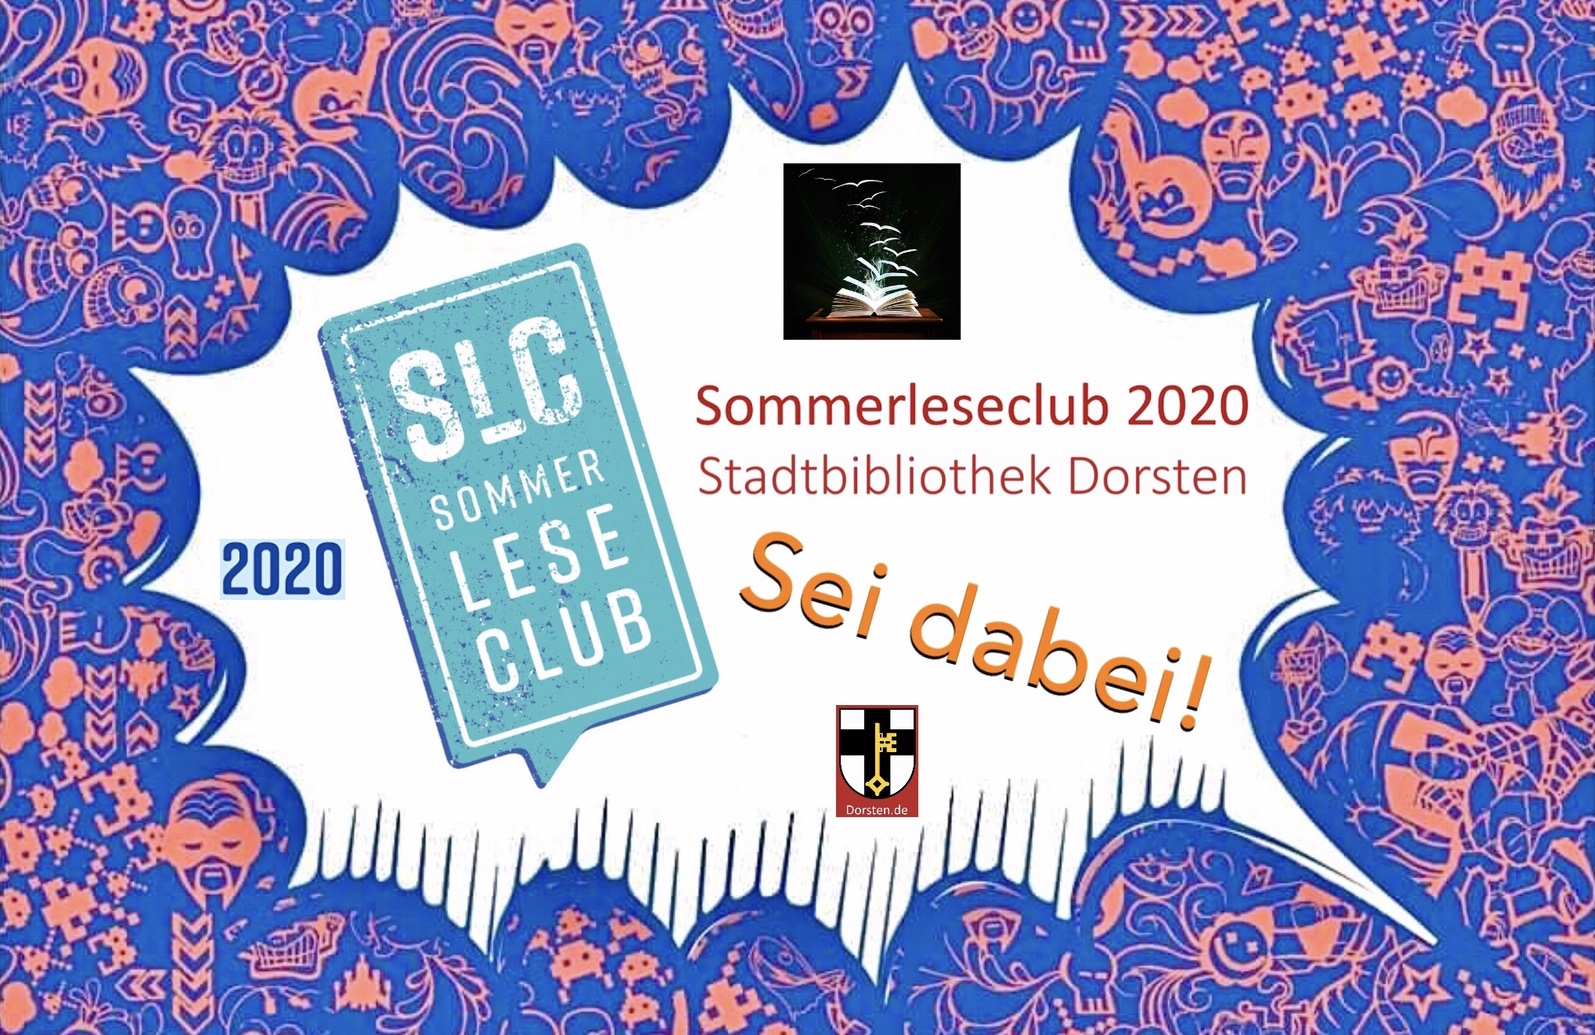 Zahlreiche kreative sowie kostenlose Angebote beim „Sommerleseclub“ der Stadtbibliothek Dorsten